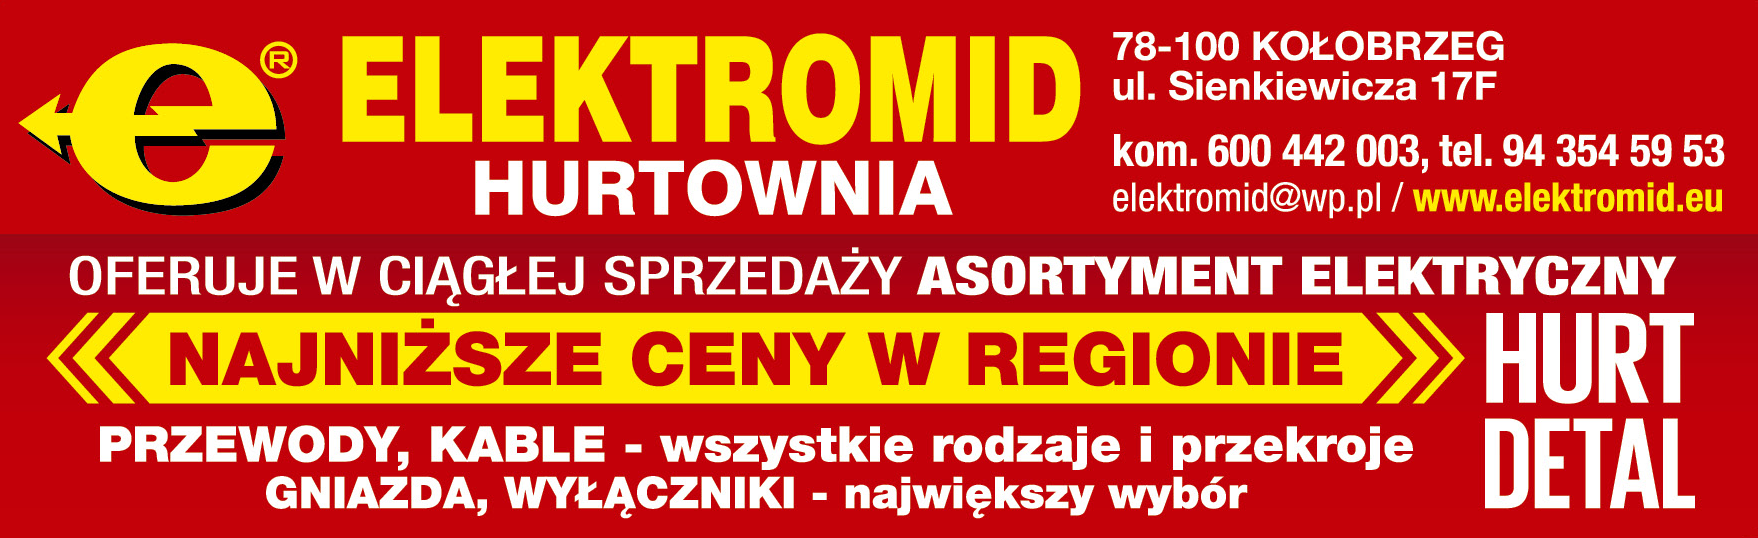 ELEKTROMID HURTOWNIA Kołobrzeg Asortyment Elektryczny 